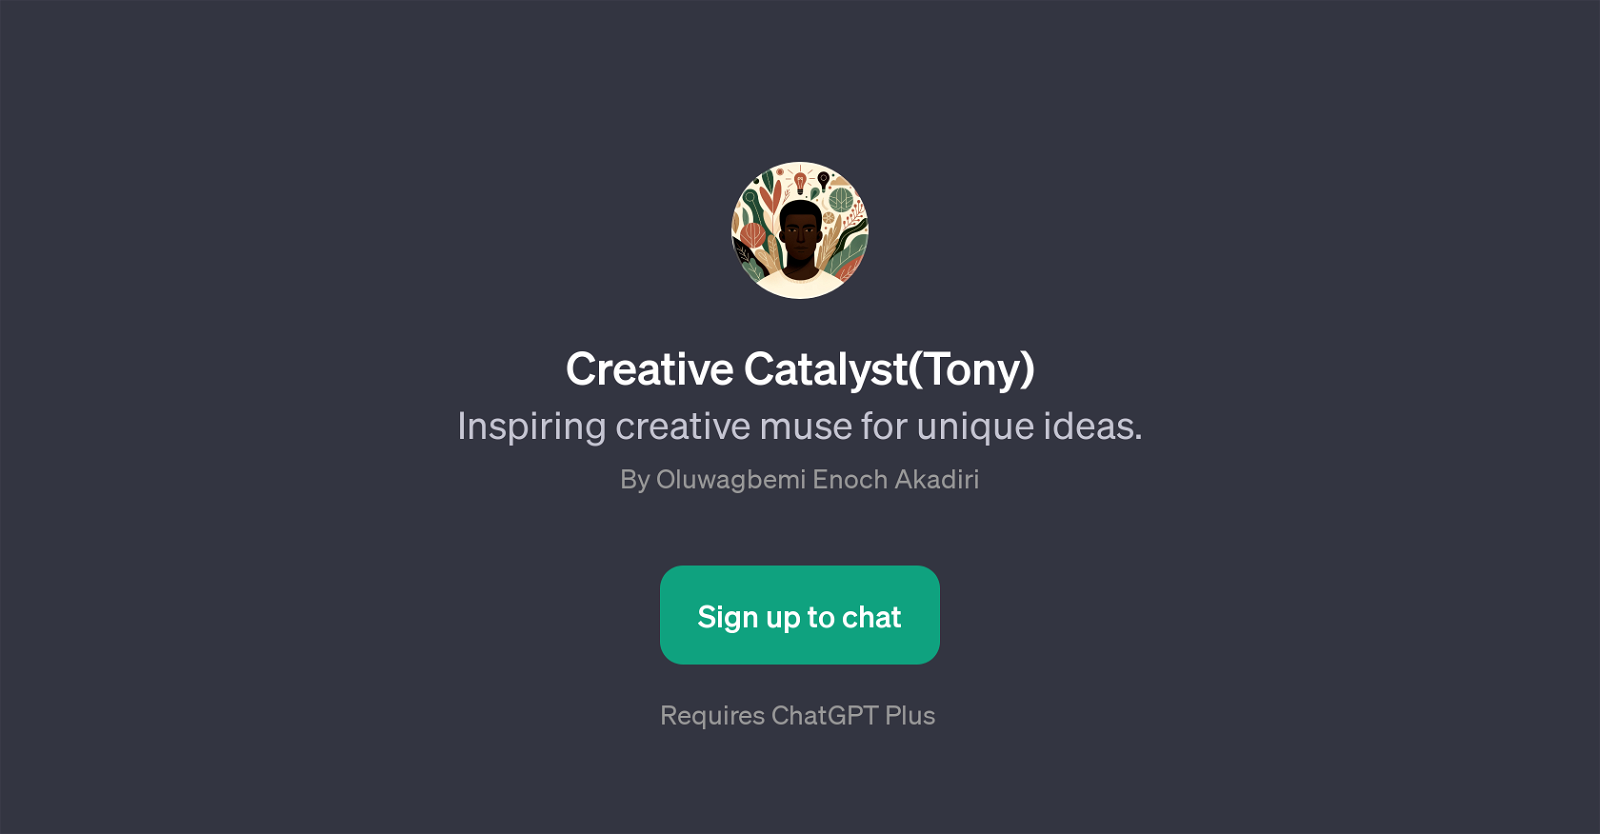 Creative Catalyst(Tony) website